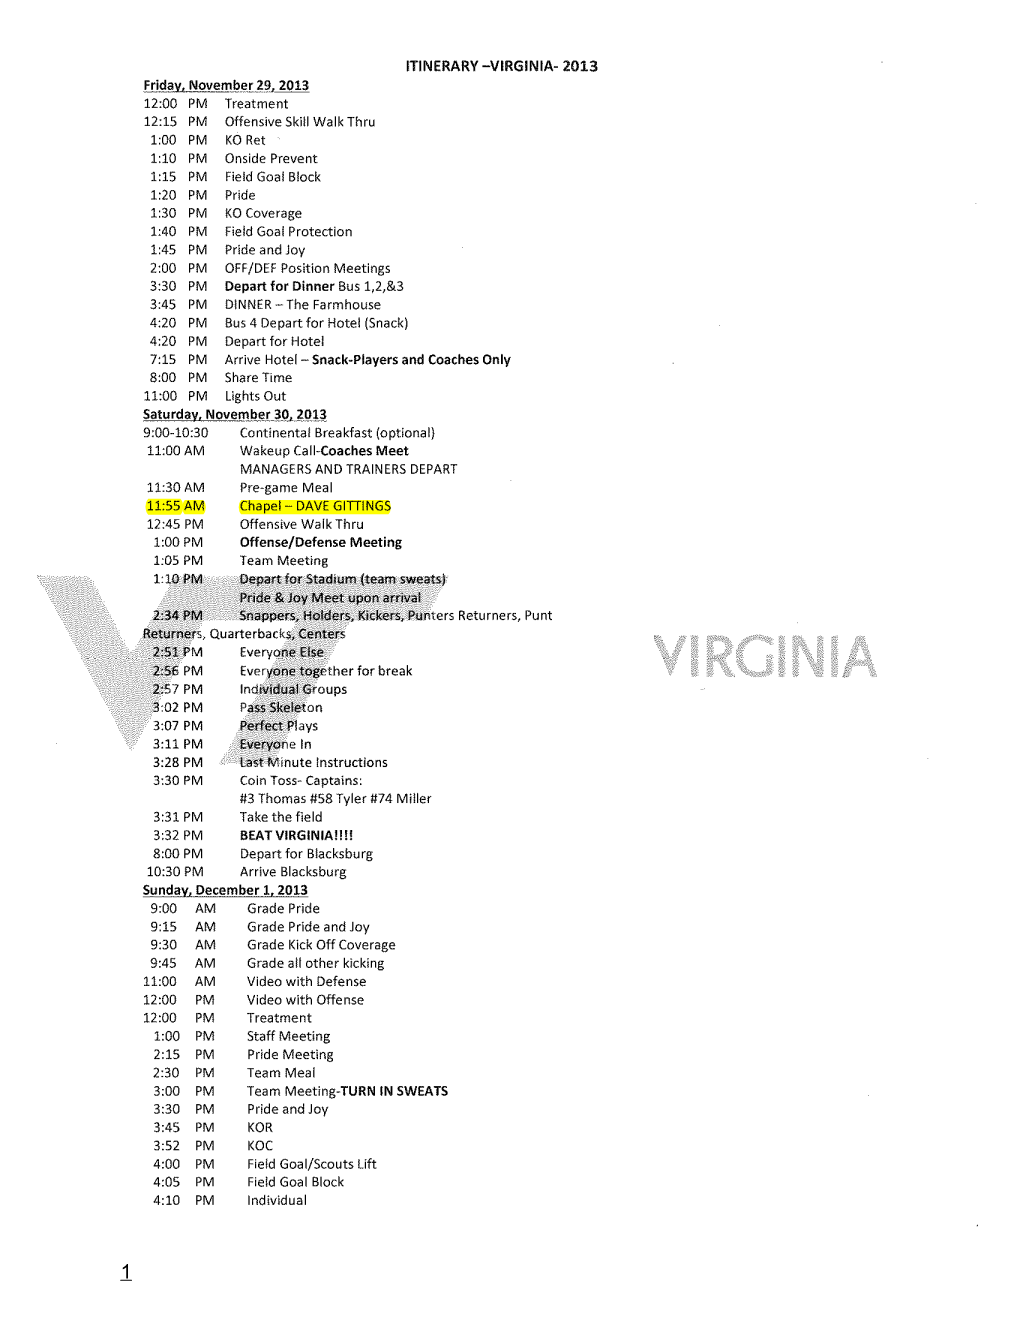 Virginia Tech Records